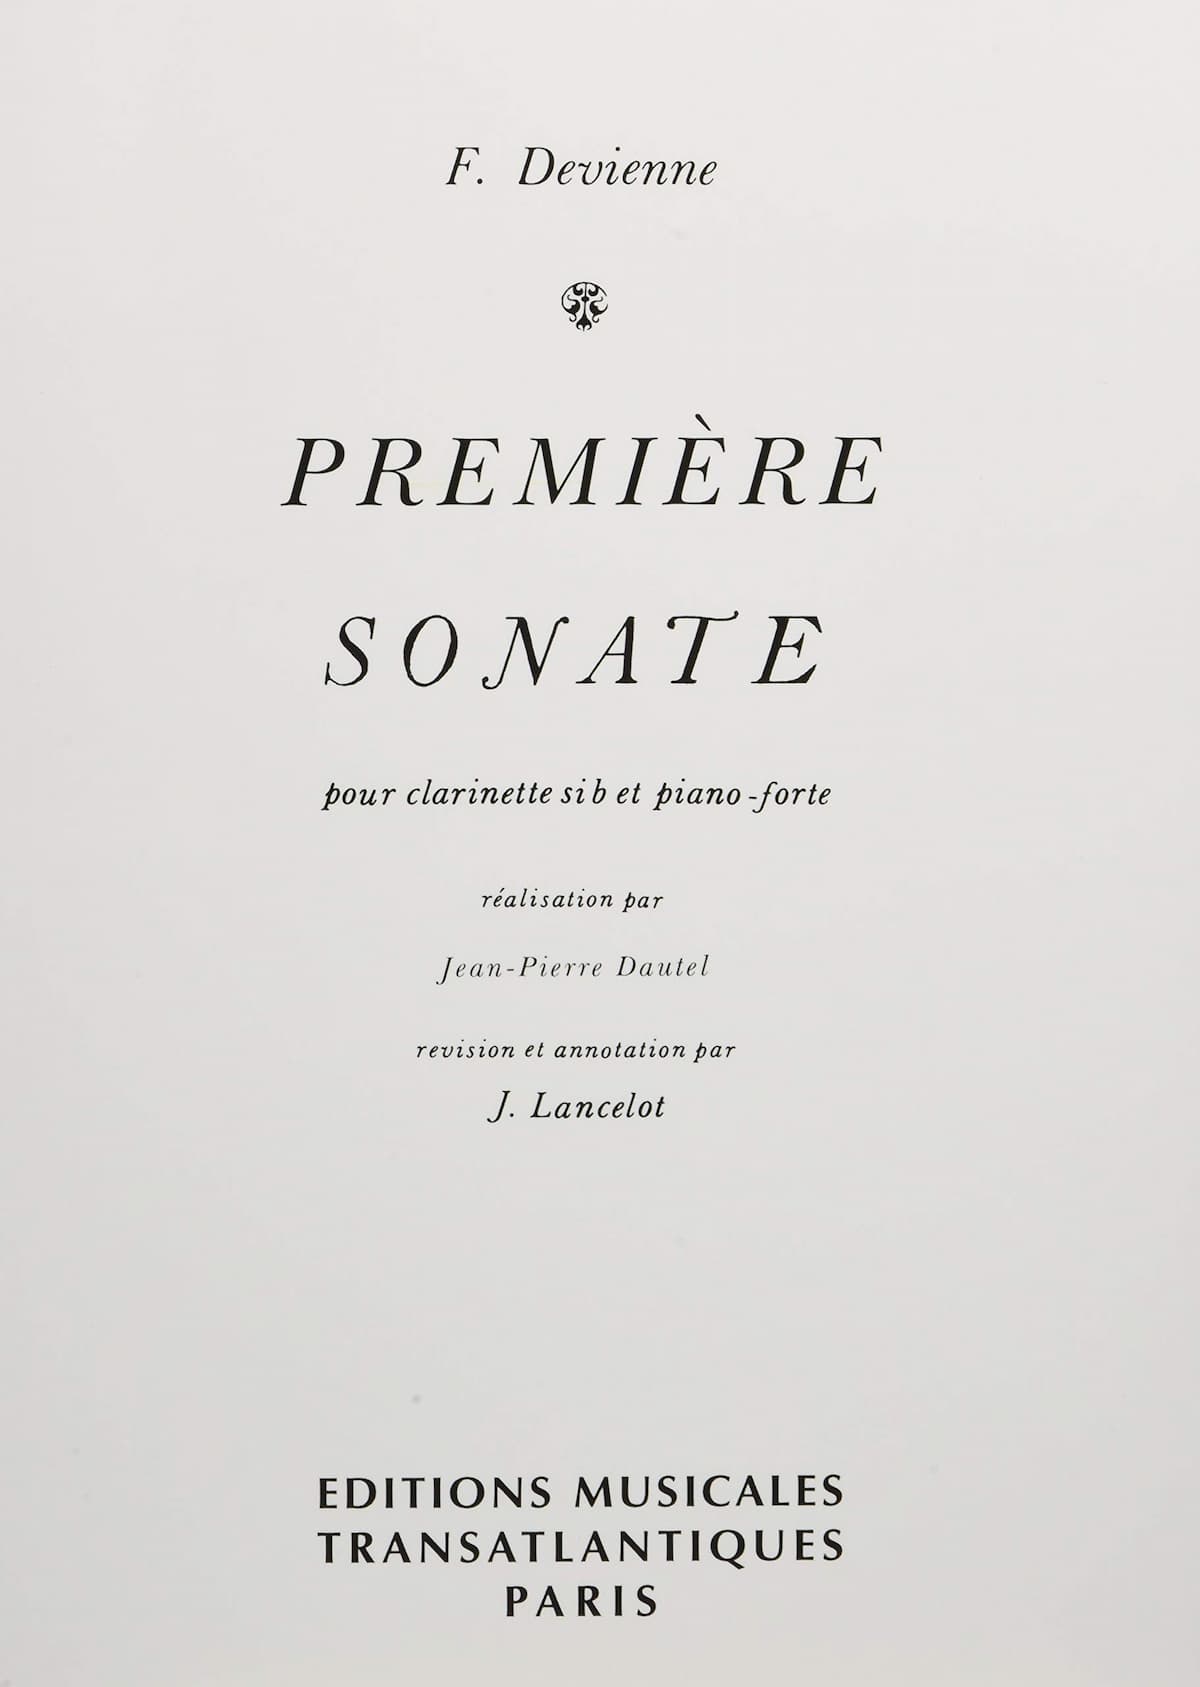 François Devienne: 1st Clarinet Sonata score cover